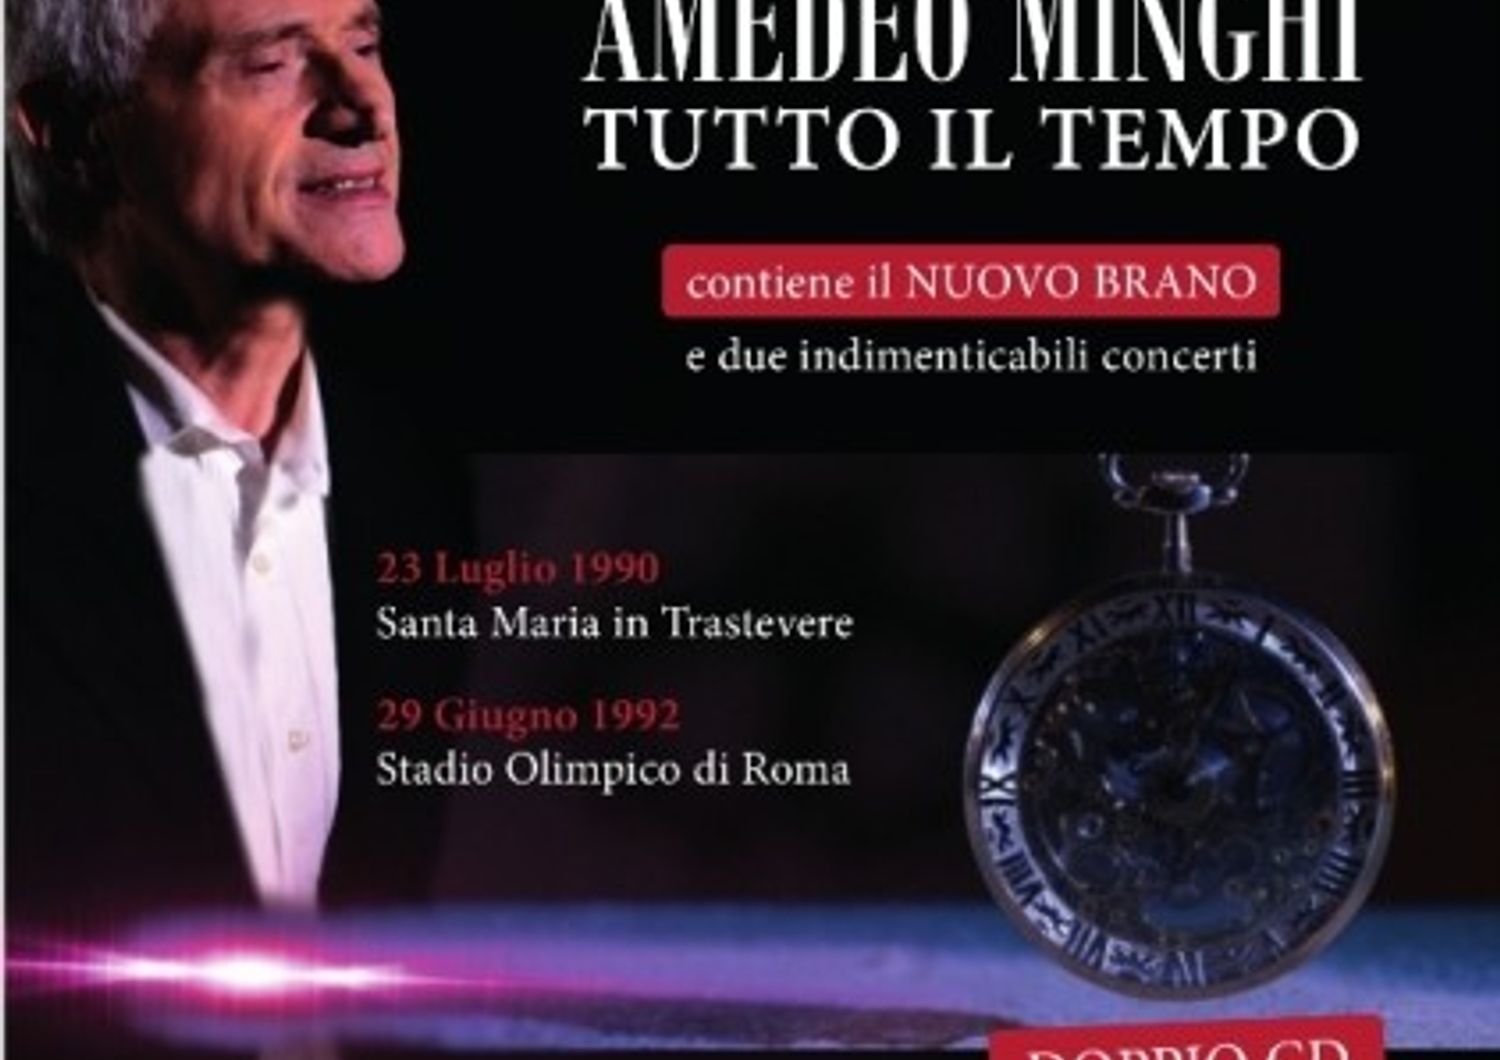 Amedeo Minghi&nbsp;pubblica su cd gli storici concerti&nbsp;del &#39;90 e del &#39;92